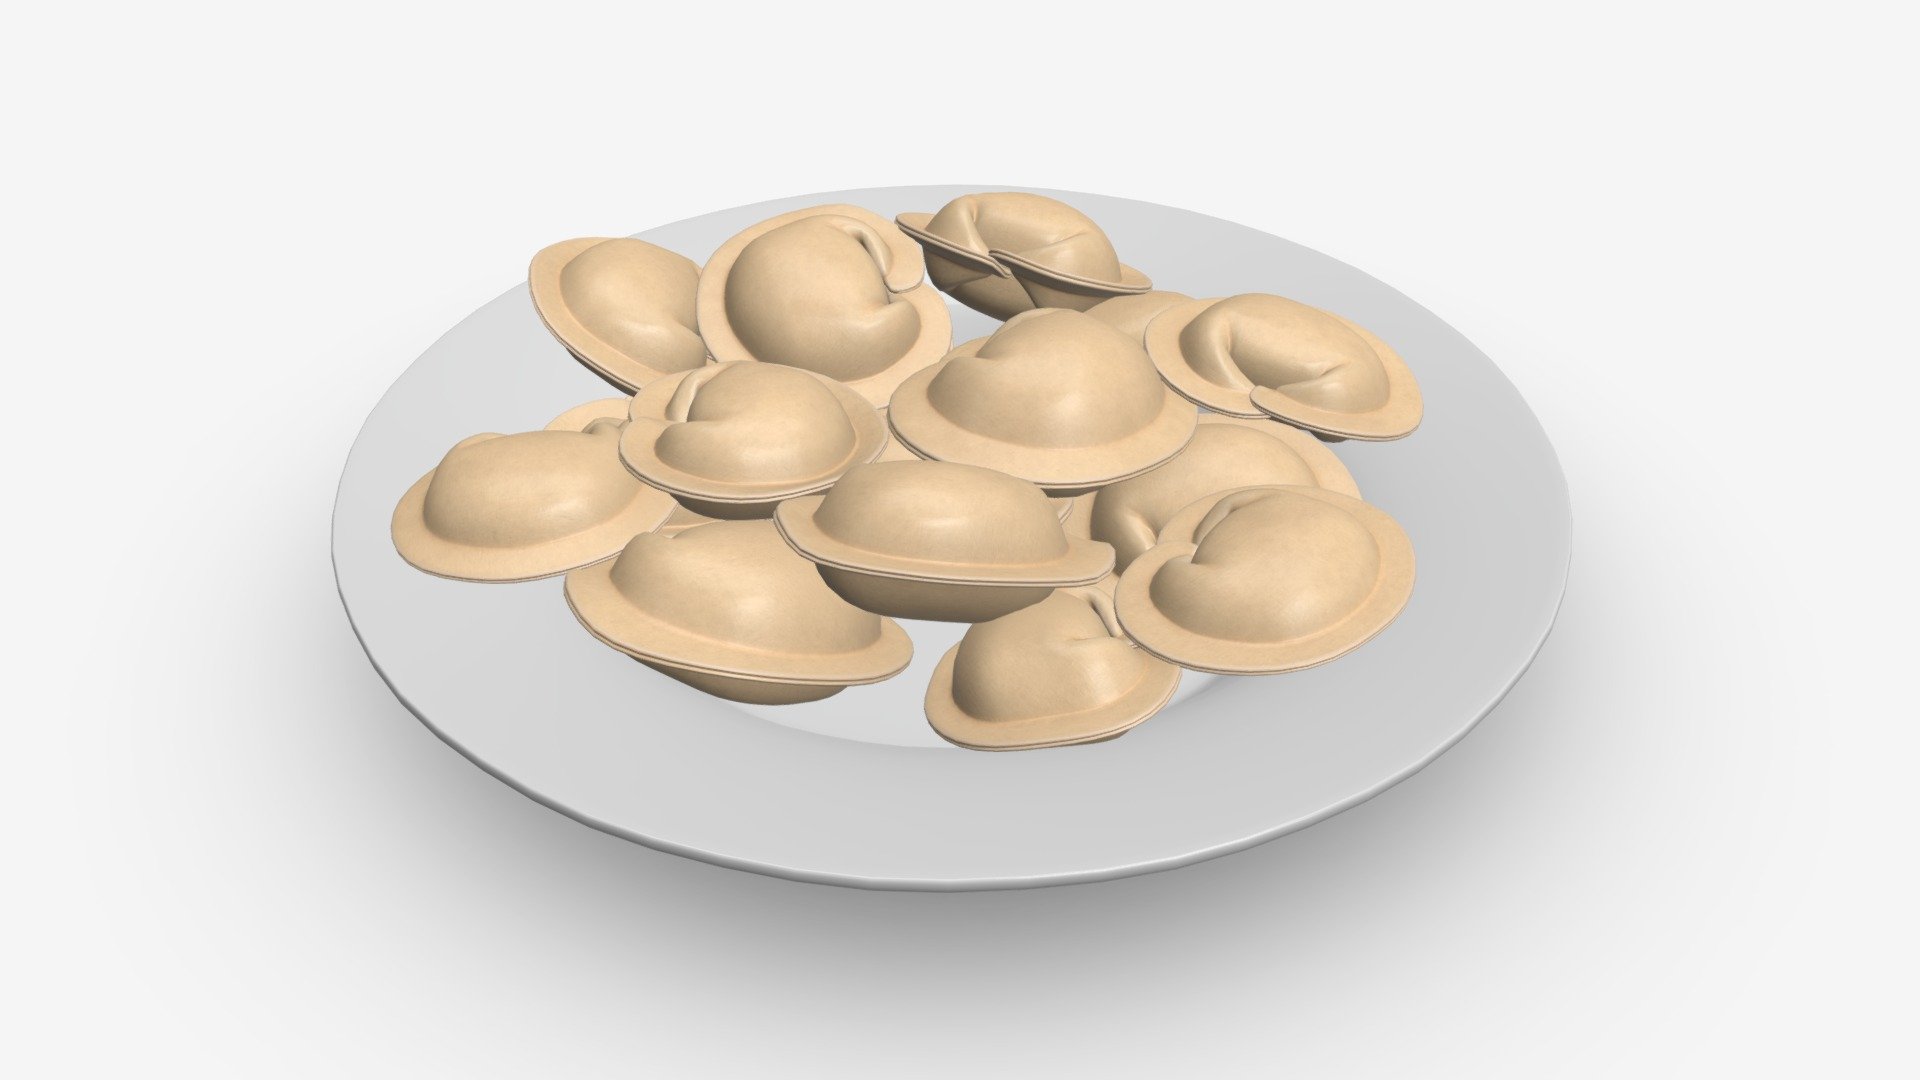 Dumplings on white plate